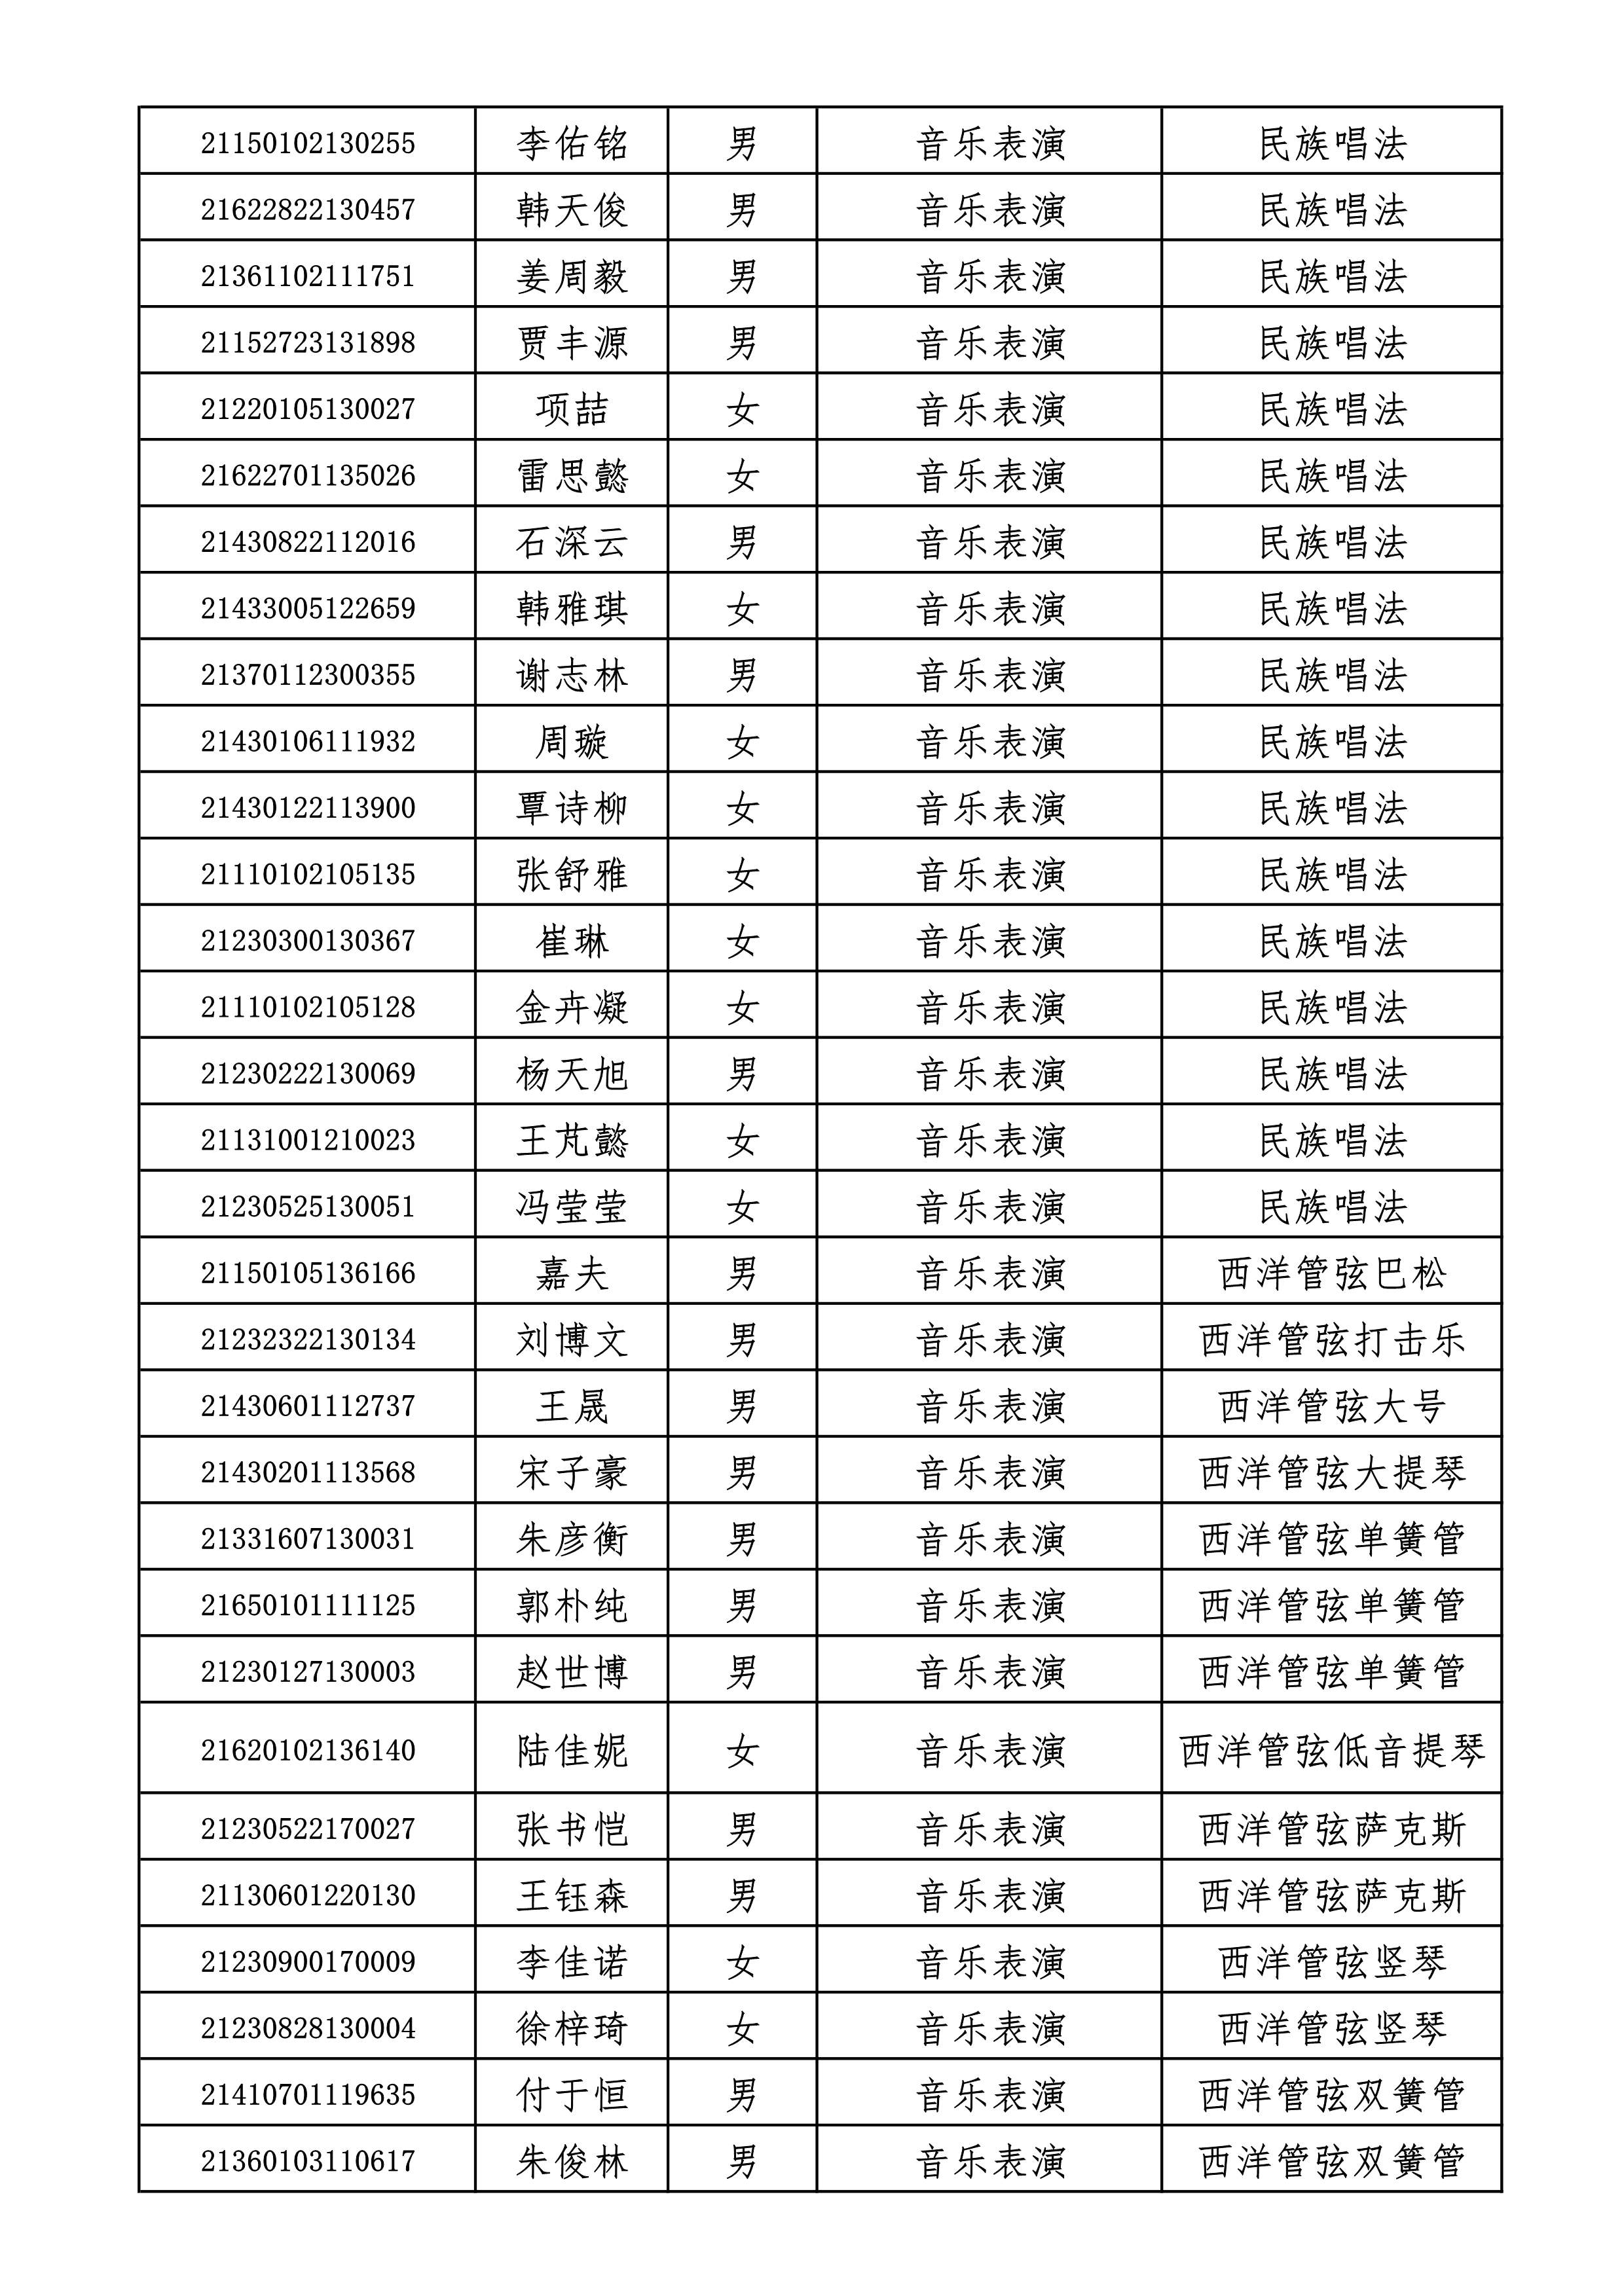 附件2+哈尔滨音乐学院2021年本科招生拟录取名单_2.jpg